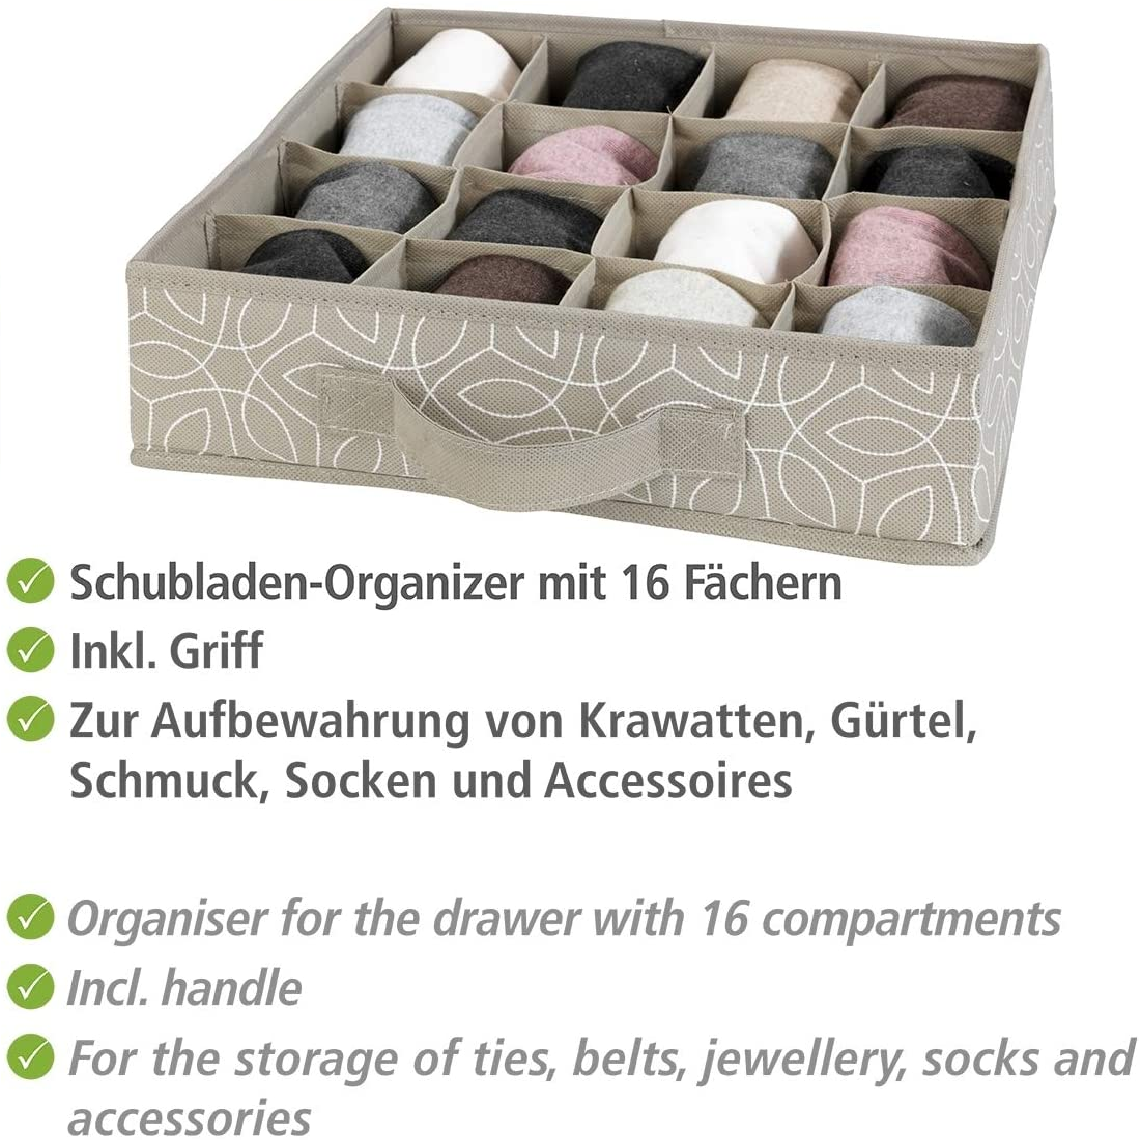 Schubladenorganizer Balance - Aufbewahrungsbox für Schubfächer, 16 Fächer, Polypropylen, 31 x 8.5 x 31 cm, Taupe